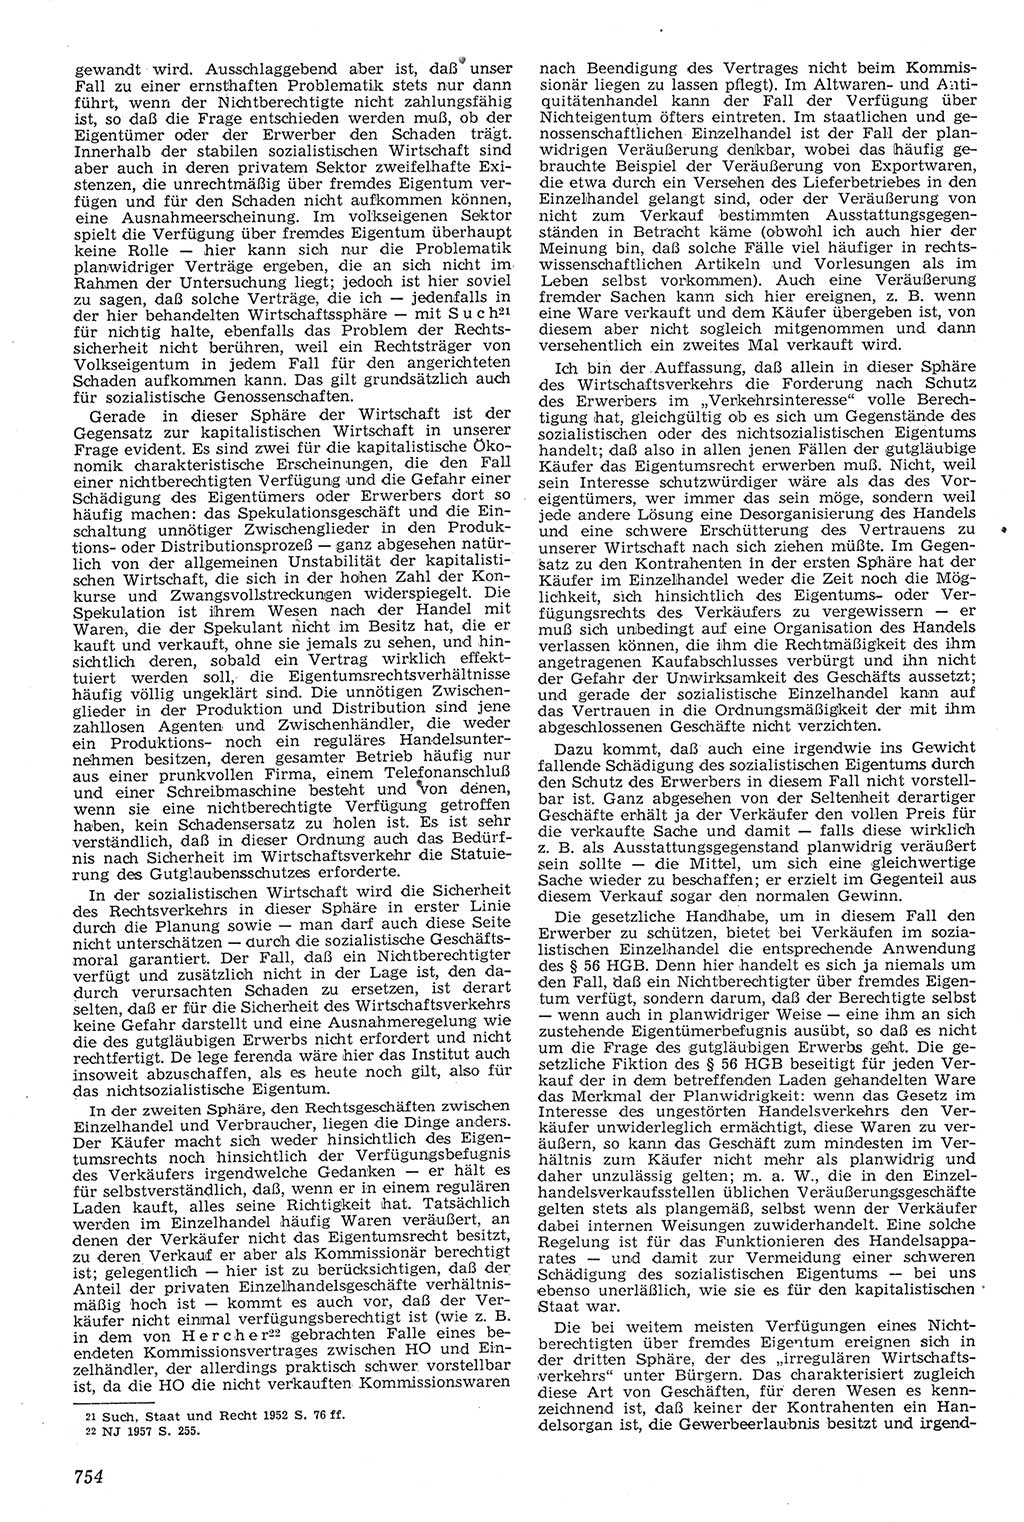 Neue Justiz (NJ), Zeitschrift für Recht und Rechtswissenschaft [Deutsche Demokratische Republik (DDR)], 11. Jahrgang 1957, Seite 754 (NJ DDR 1957, S. 754)